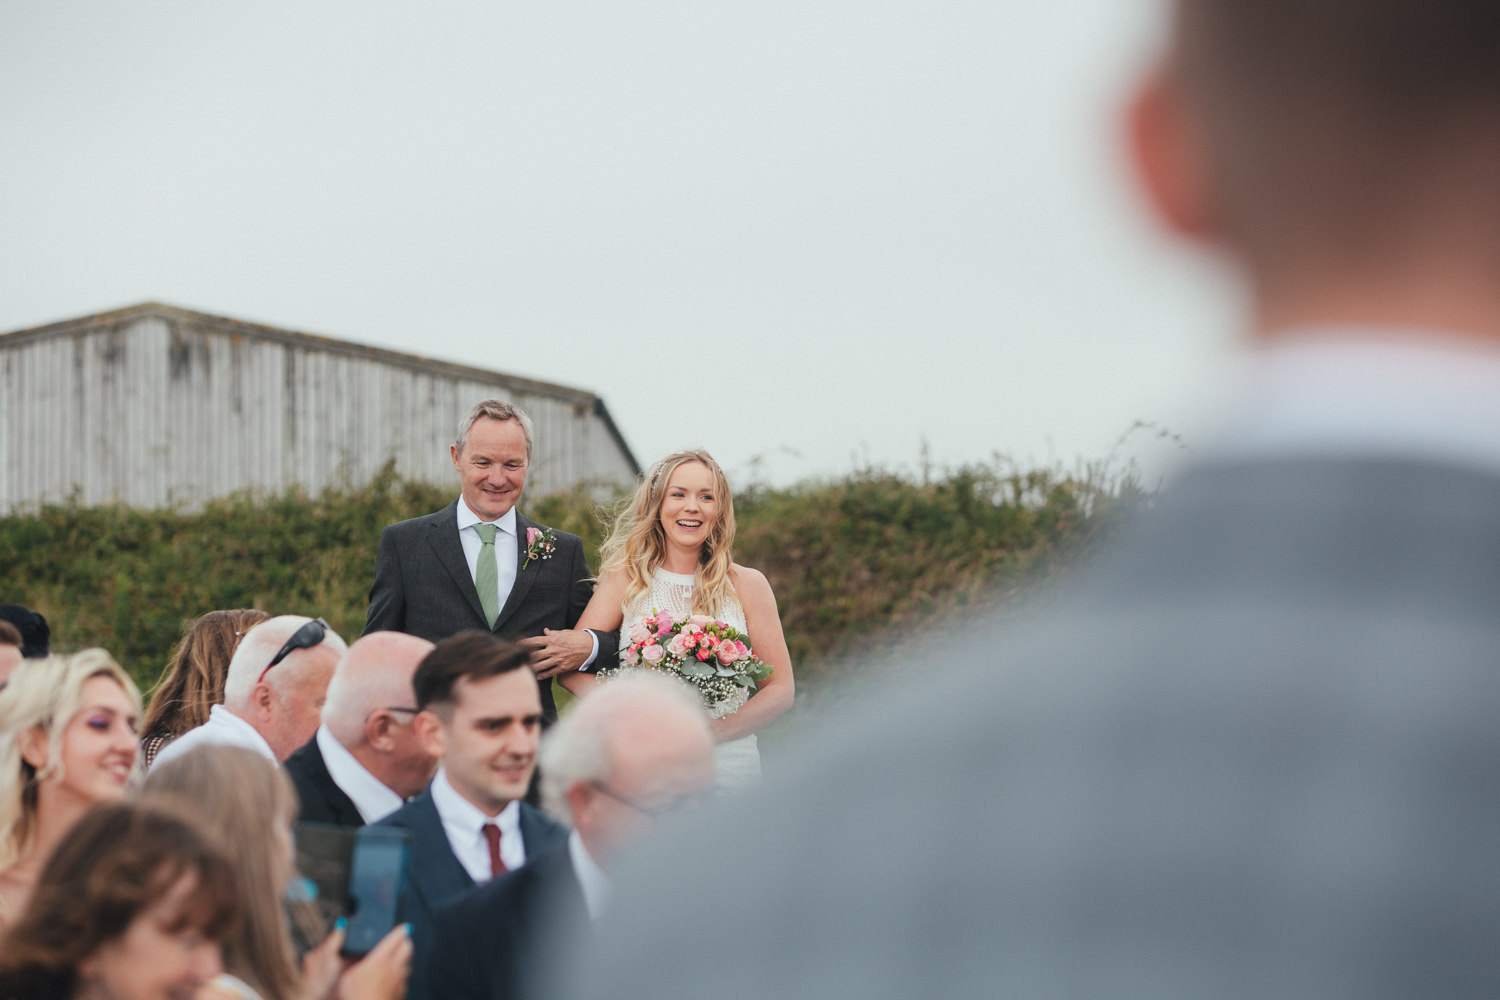 East Soar Farm wedding, farm wedding, outdoor wedding, Documentary wedding photography Devon